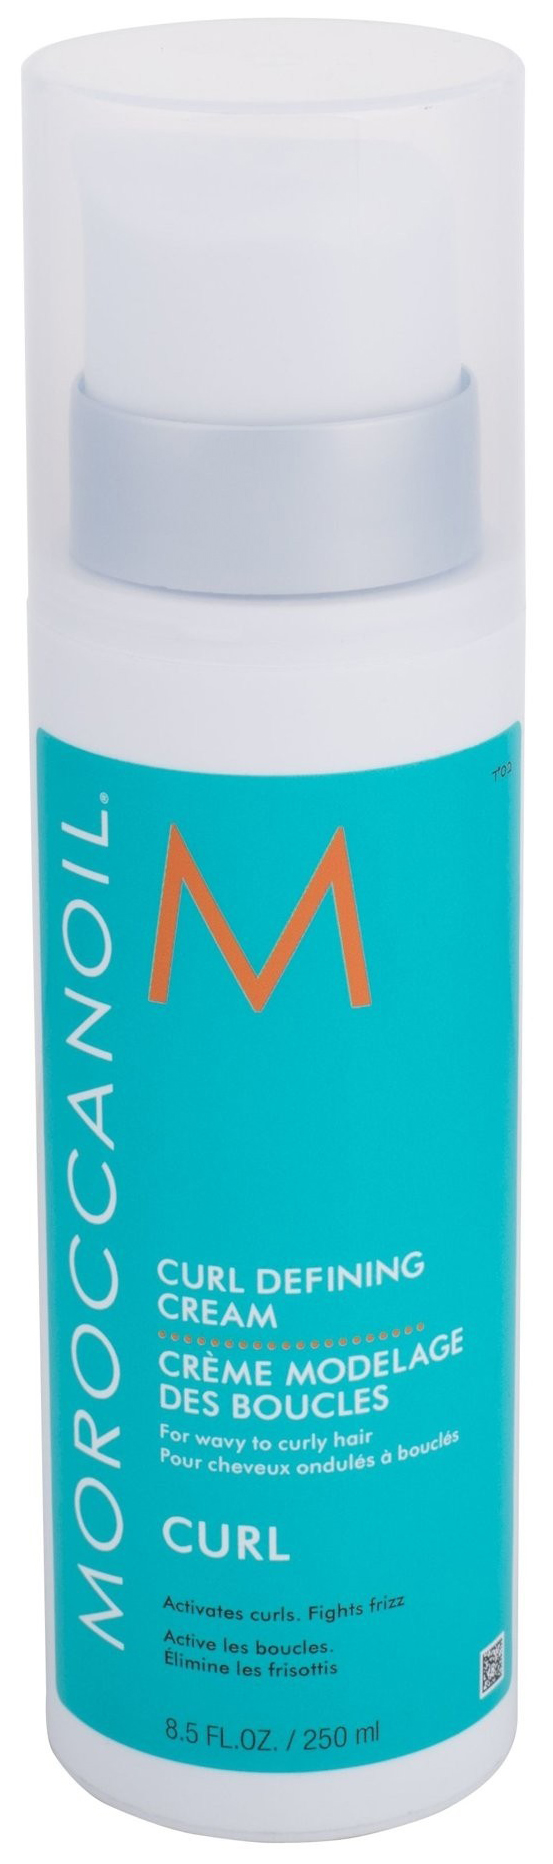 Купить Крем для формирования локонов Moroccanoil Curl Defining Cream 250 мл